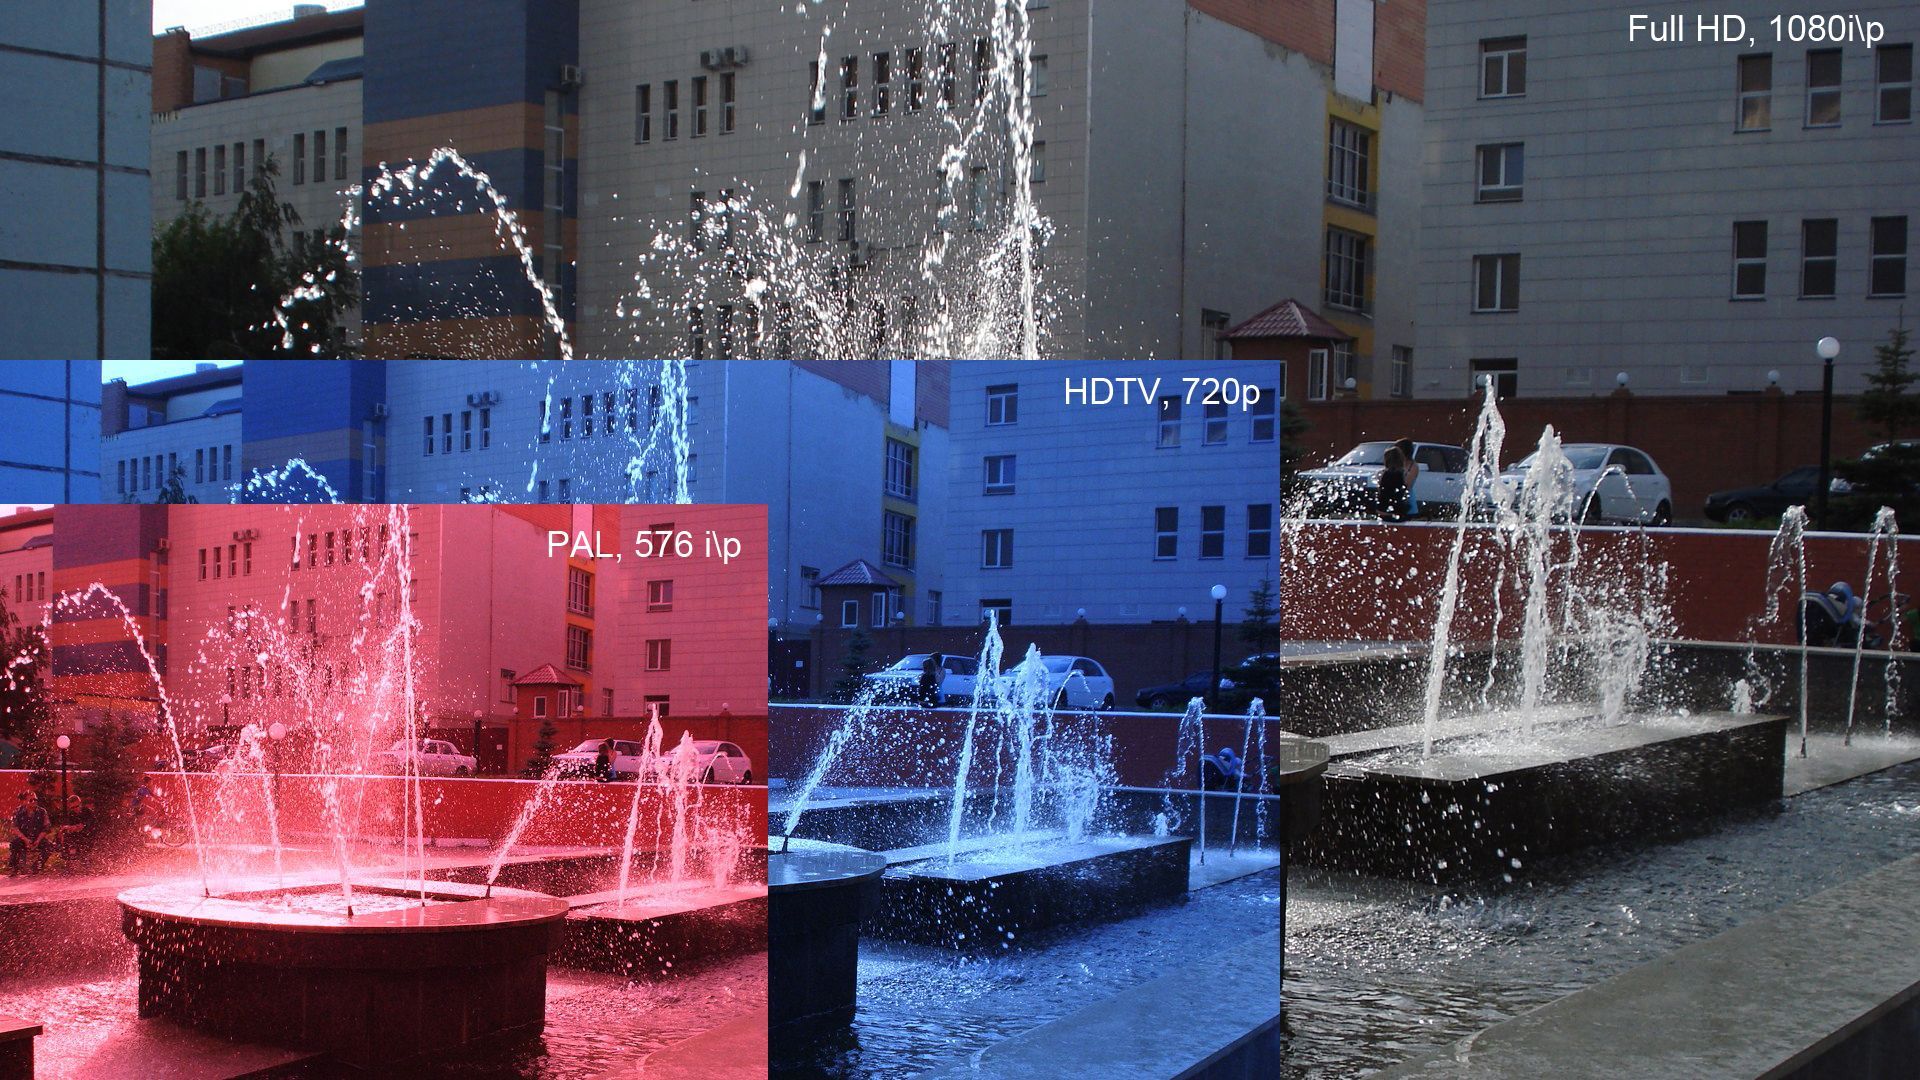 SD vs HD Resolutions Compared - HD Ready vs Full HD vs Ultra HD: qual è la differenza? Spiegato